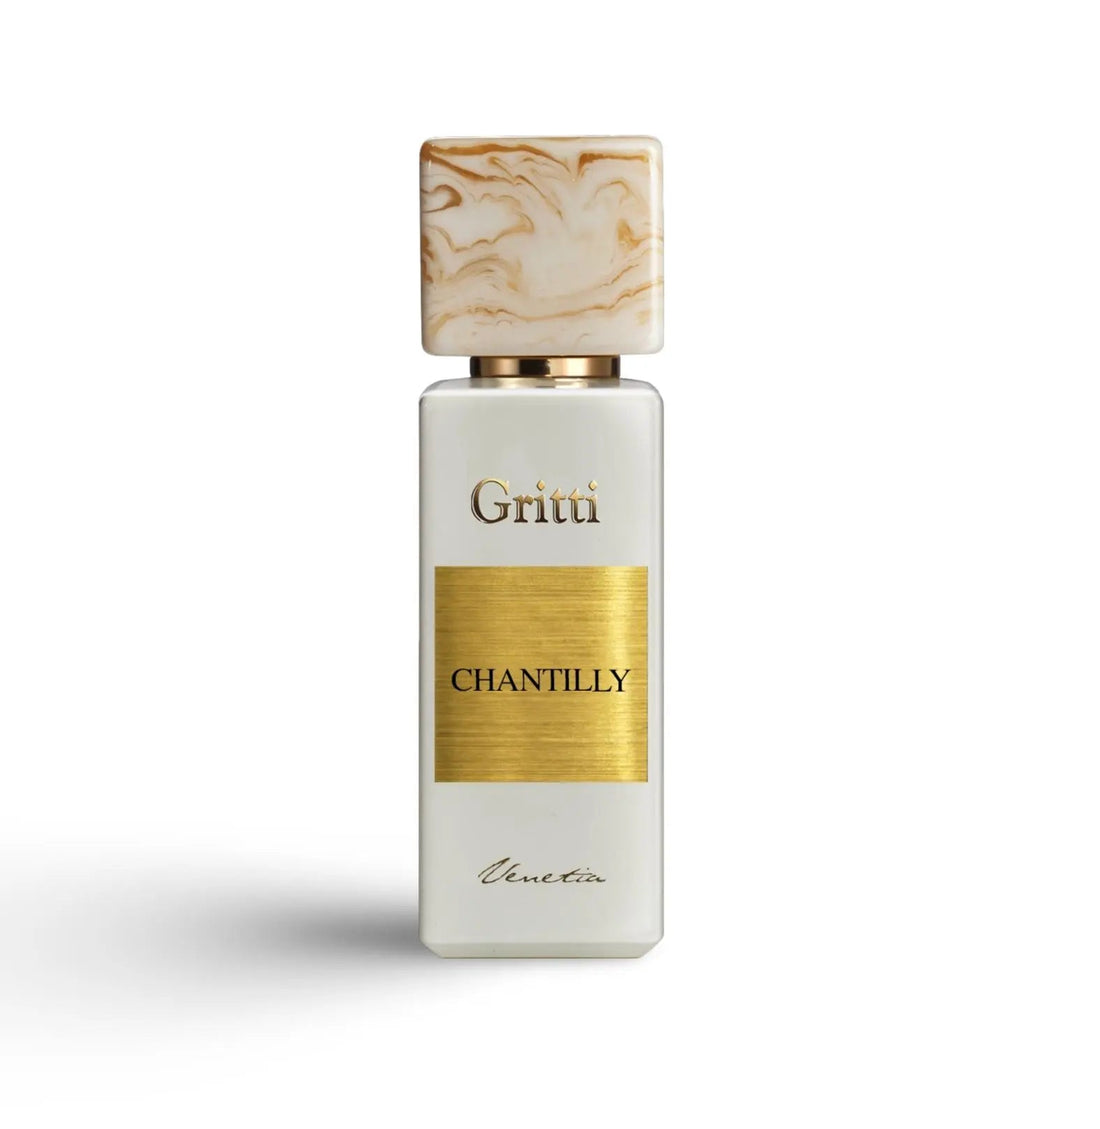 Chantilly eau de parfum Gritti 100ml